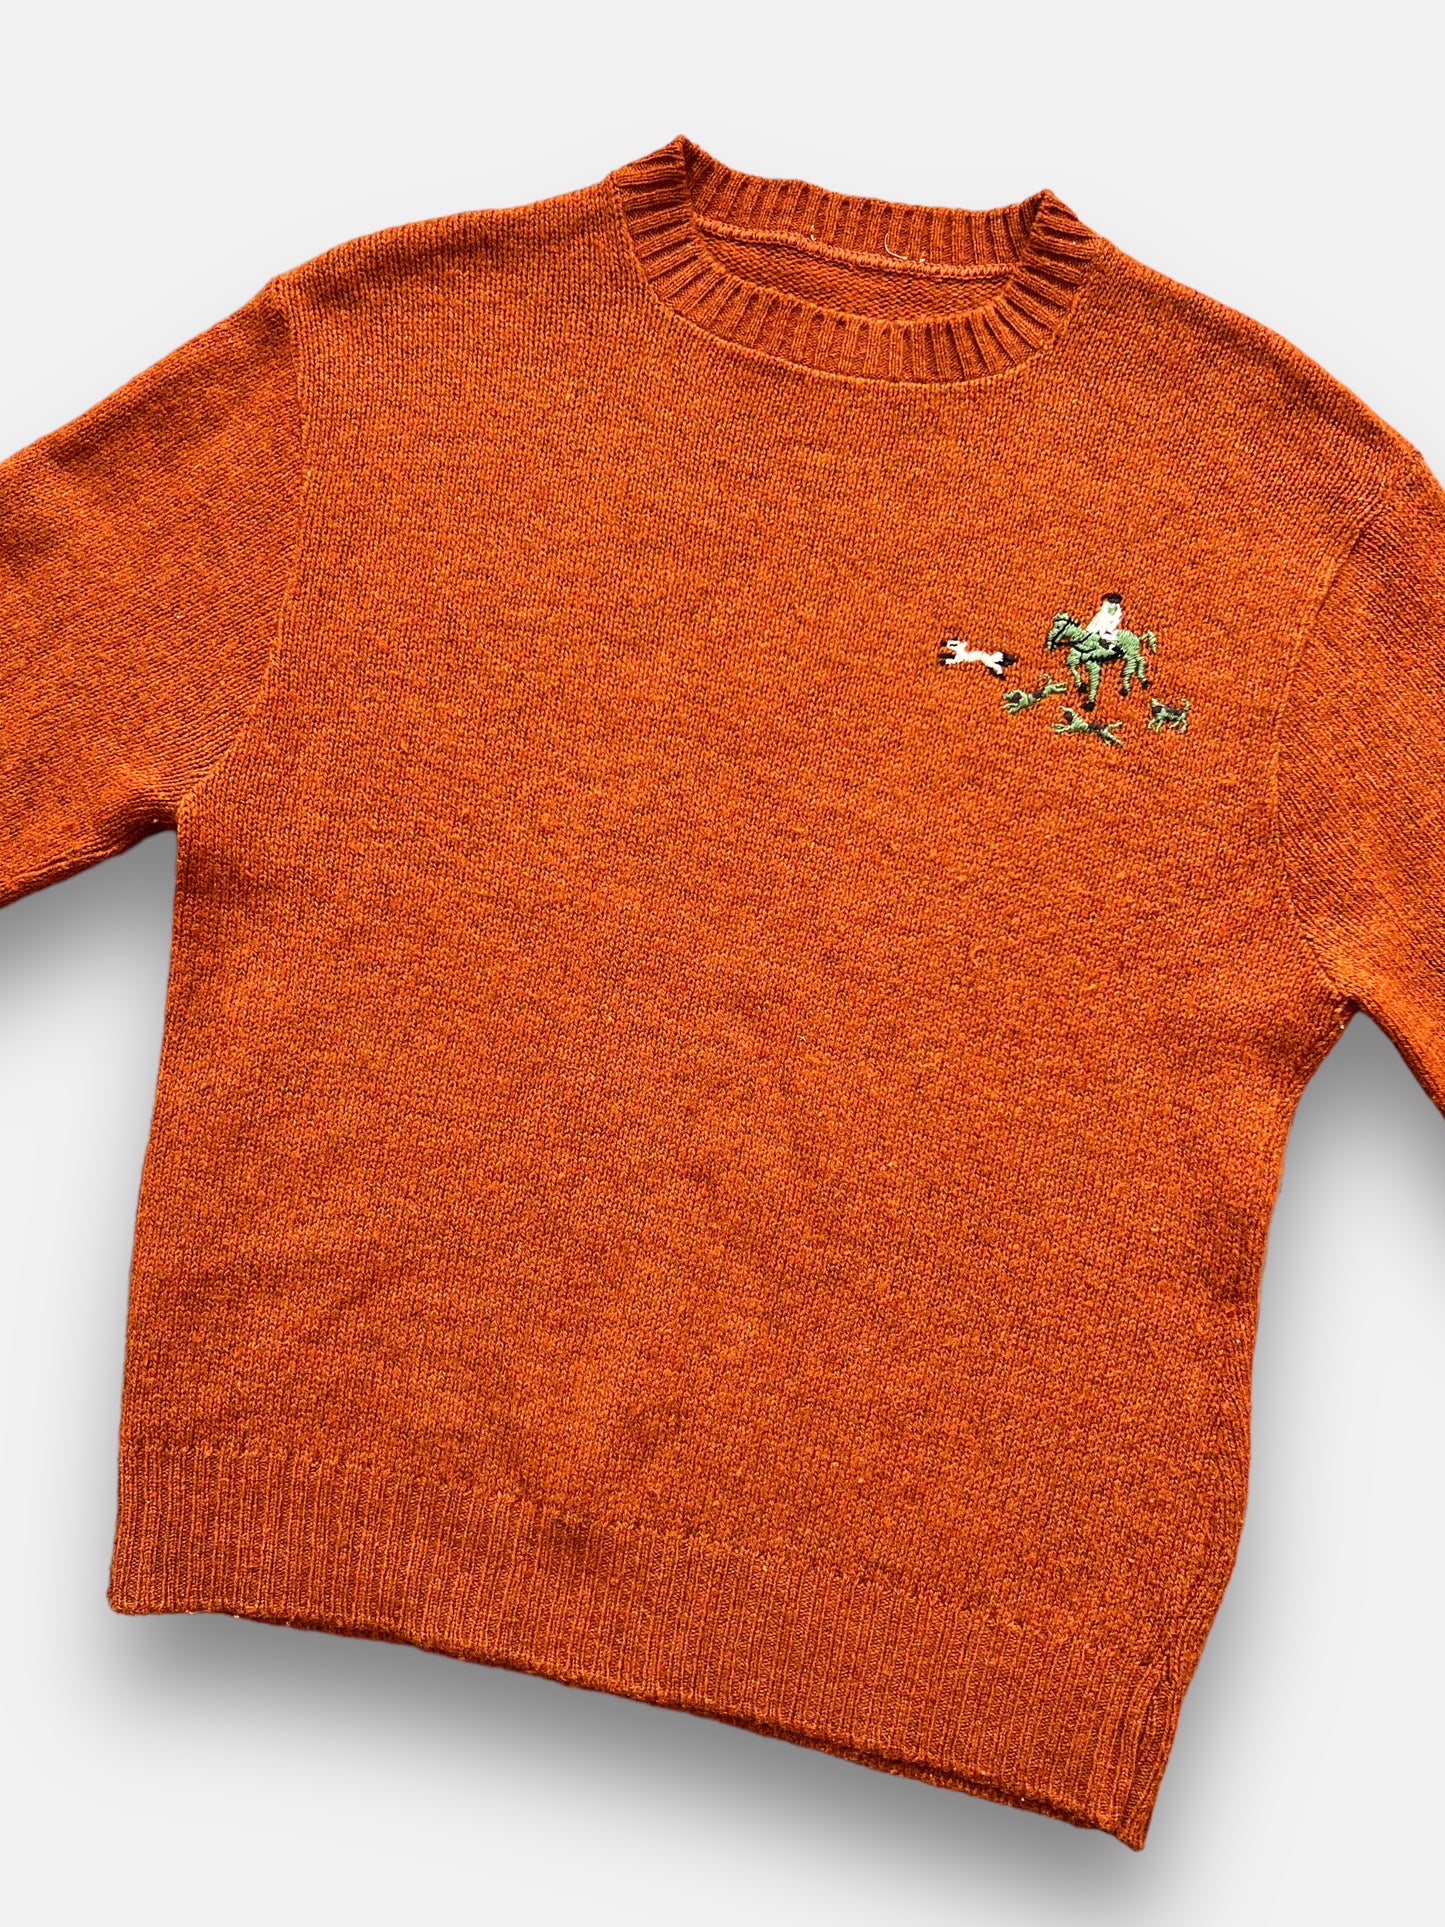 70s Jantzen Wool Sweater (S)